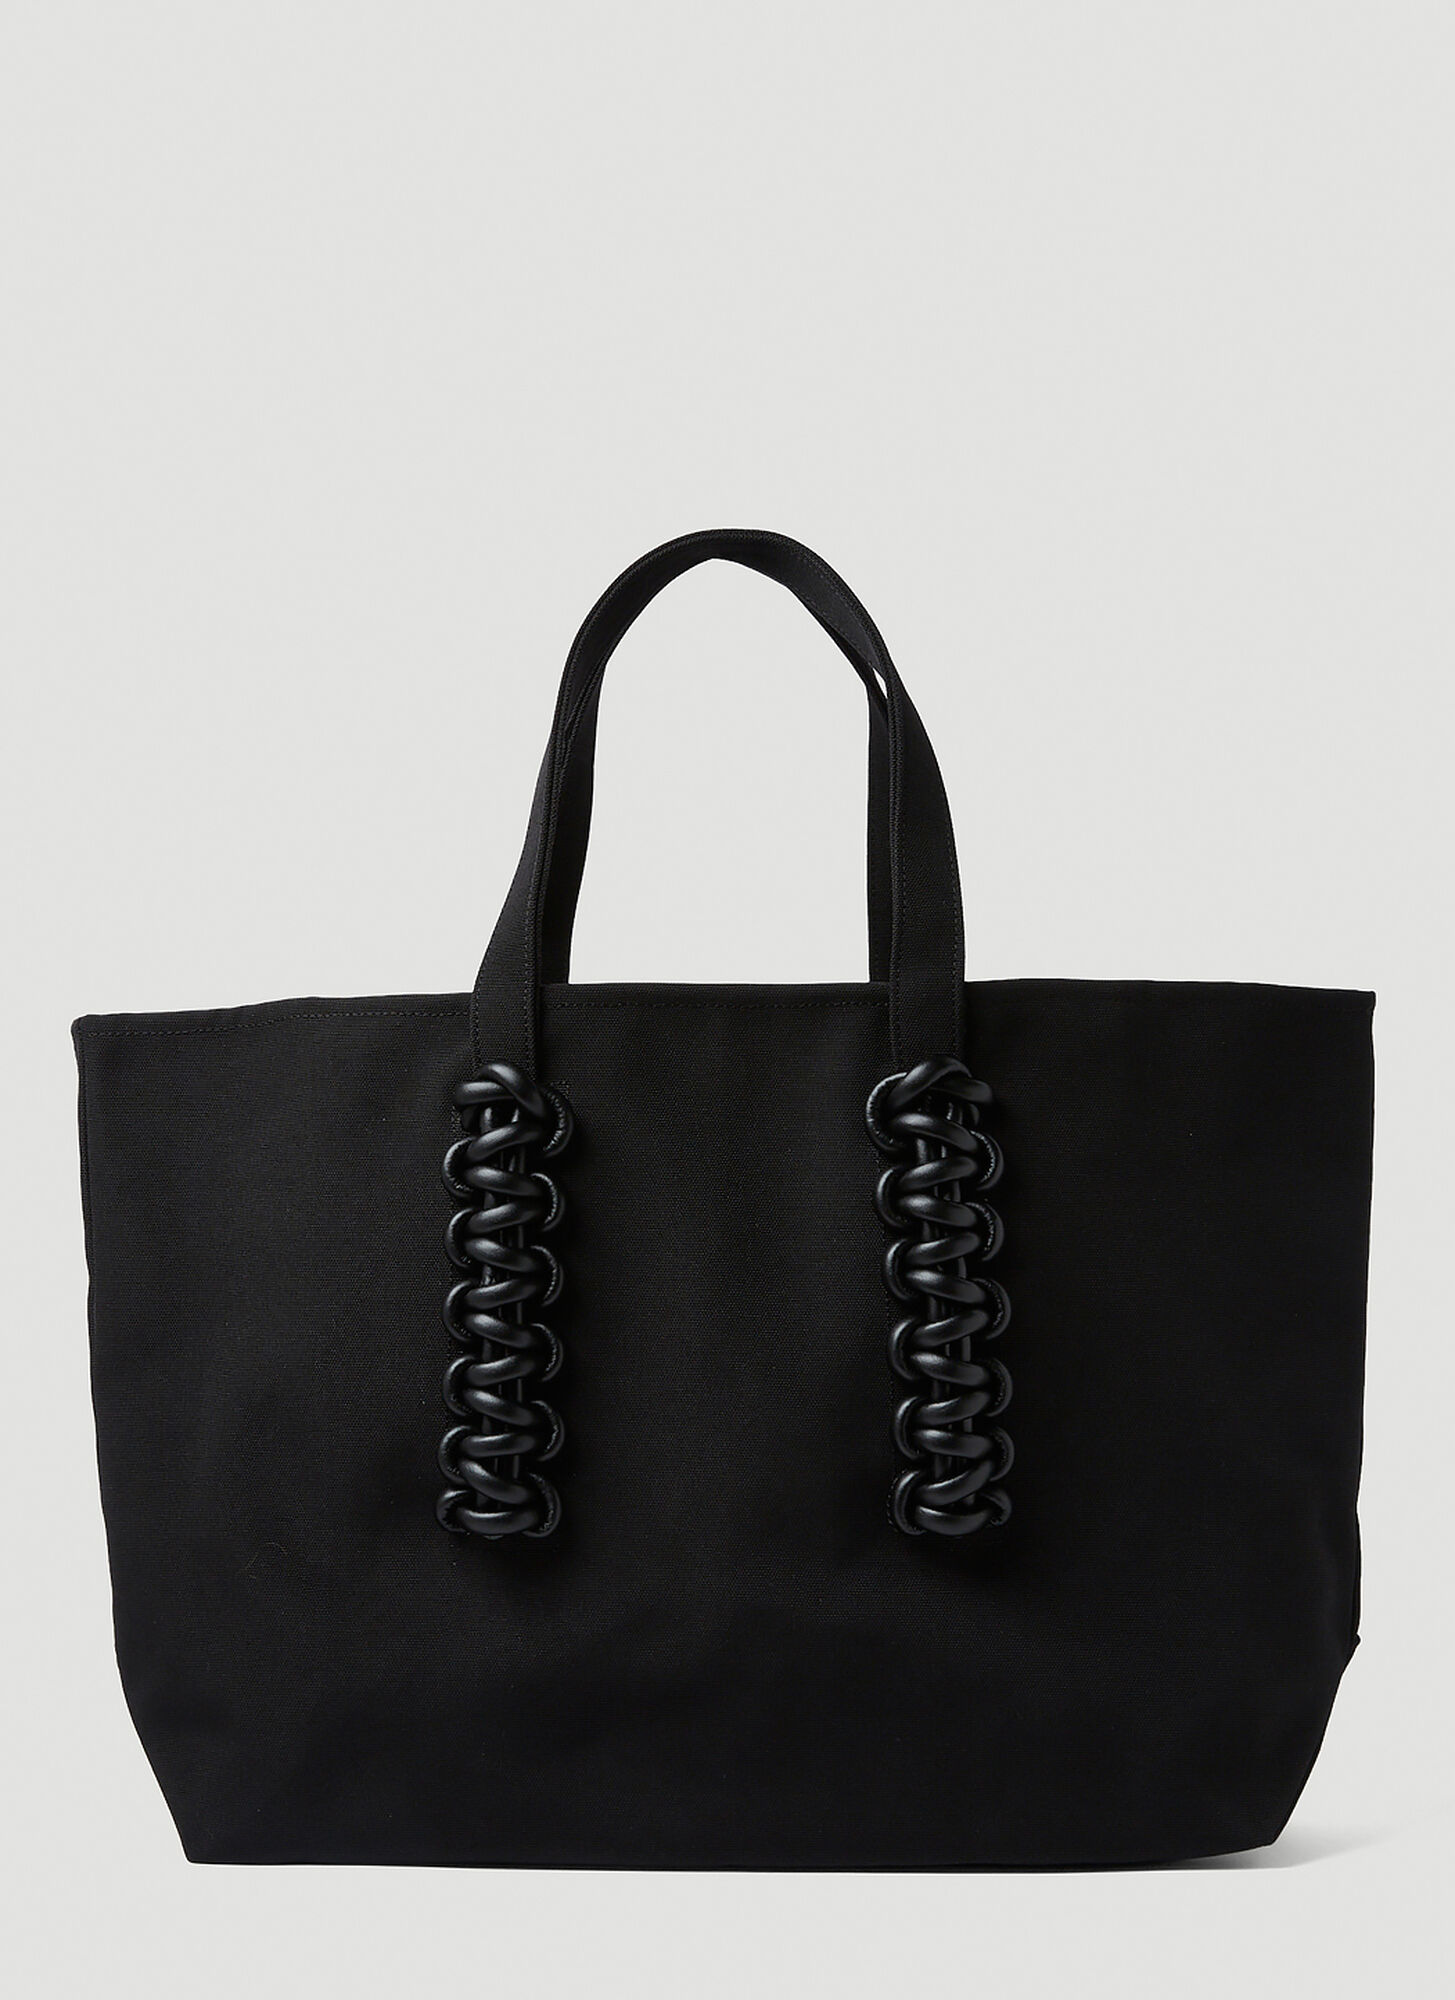 Kara Cobra Carryall Tote Bag In Black